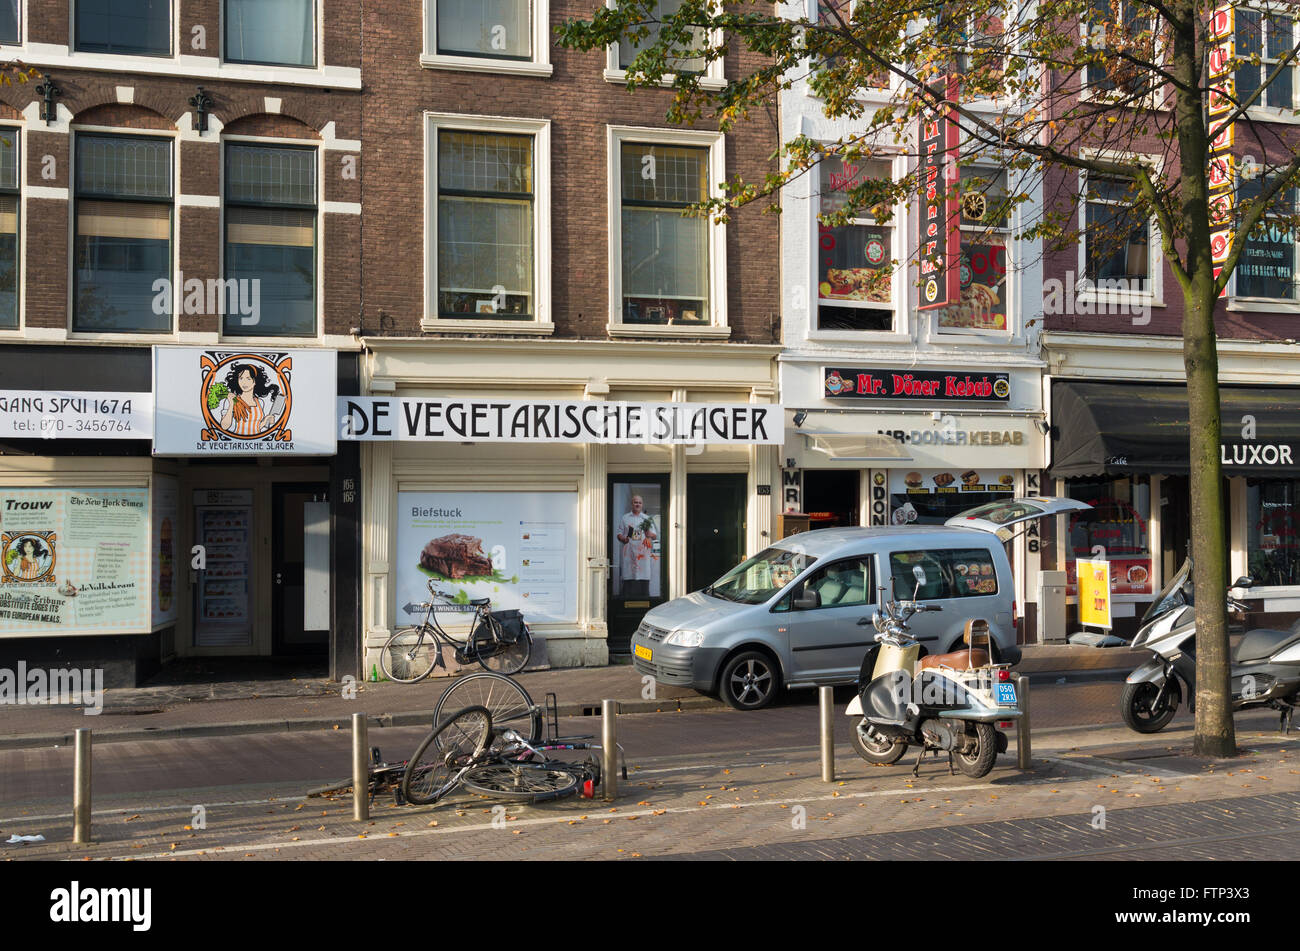 DEN Haag, Niederlande - 3. Oktober 2015: Vegetarische Metzgerei Shop. Sie verkaufen Produkte mit der Struktur, Form und Geschmack der m Stockfoto